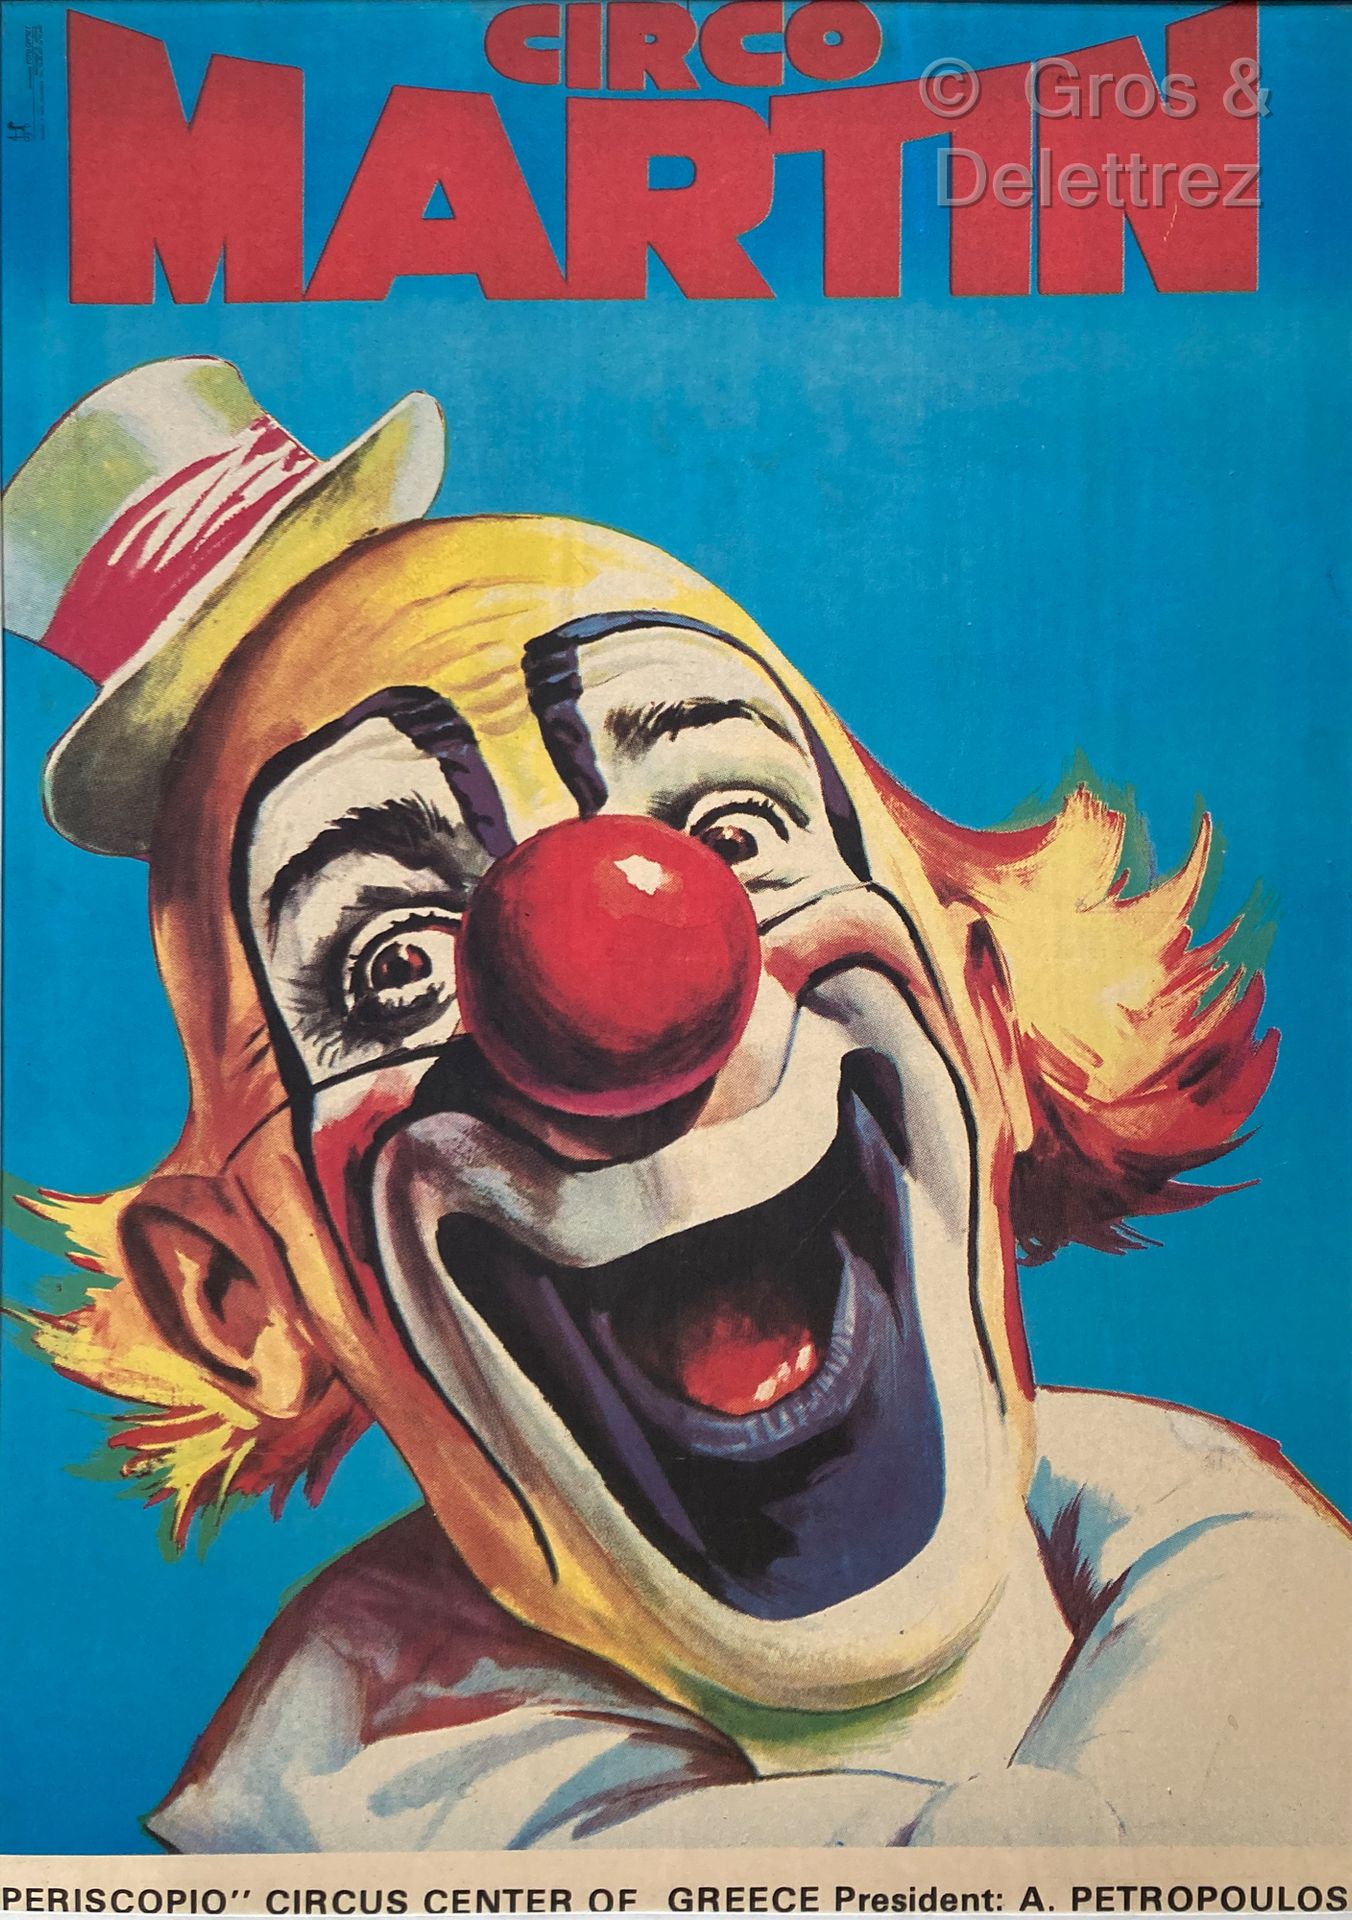 Null CIRCO MARTIN

Zirkusplakat mit dem Clown Auguste

97 x 68 cm